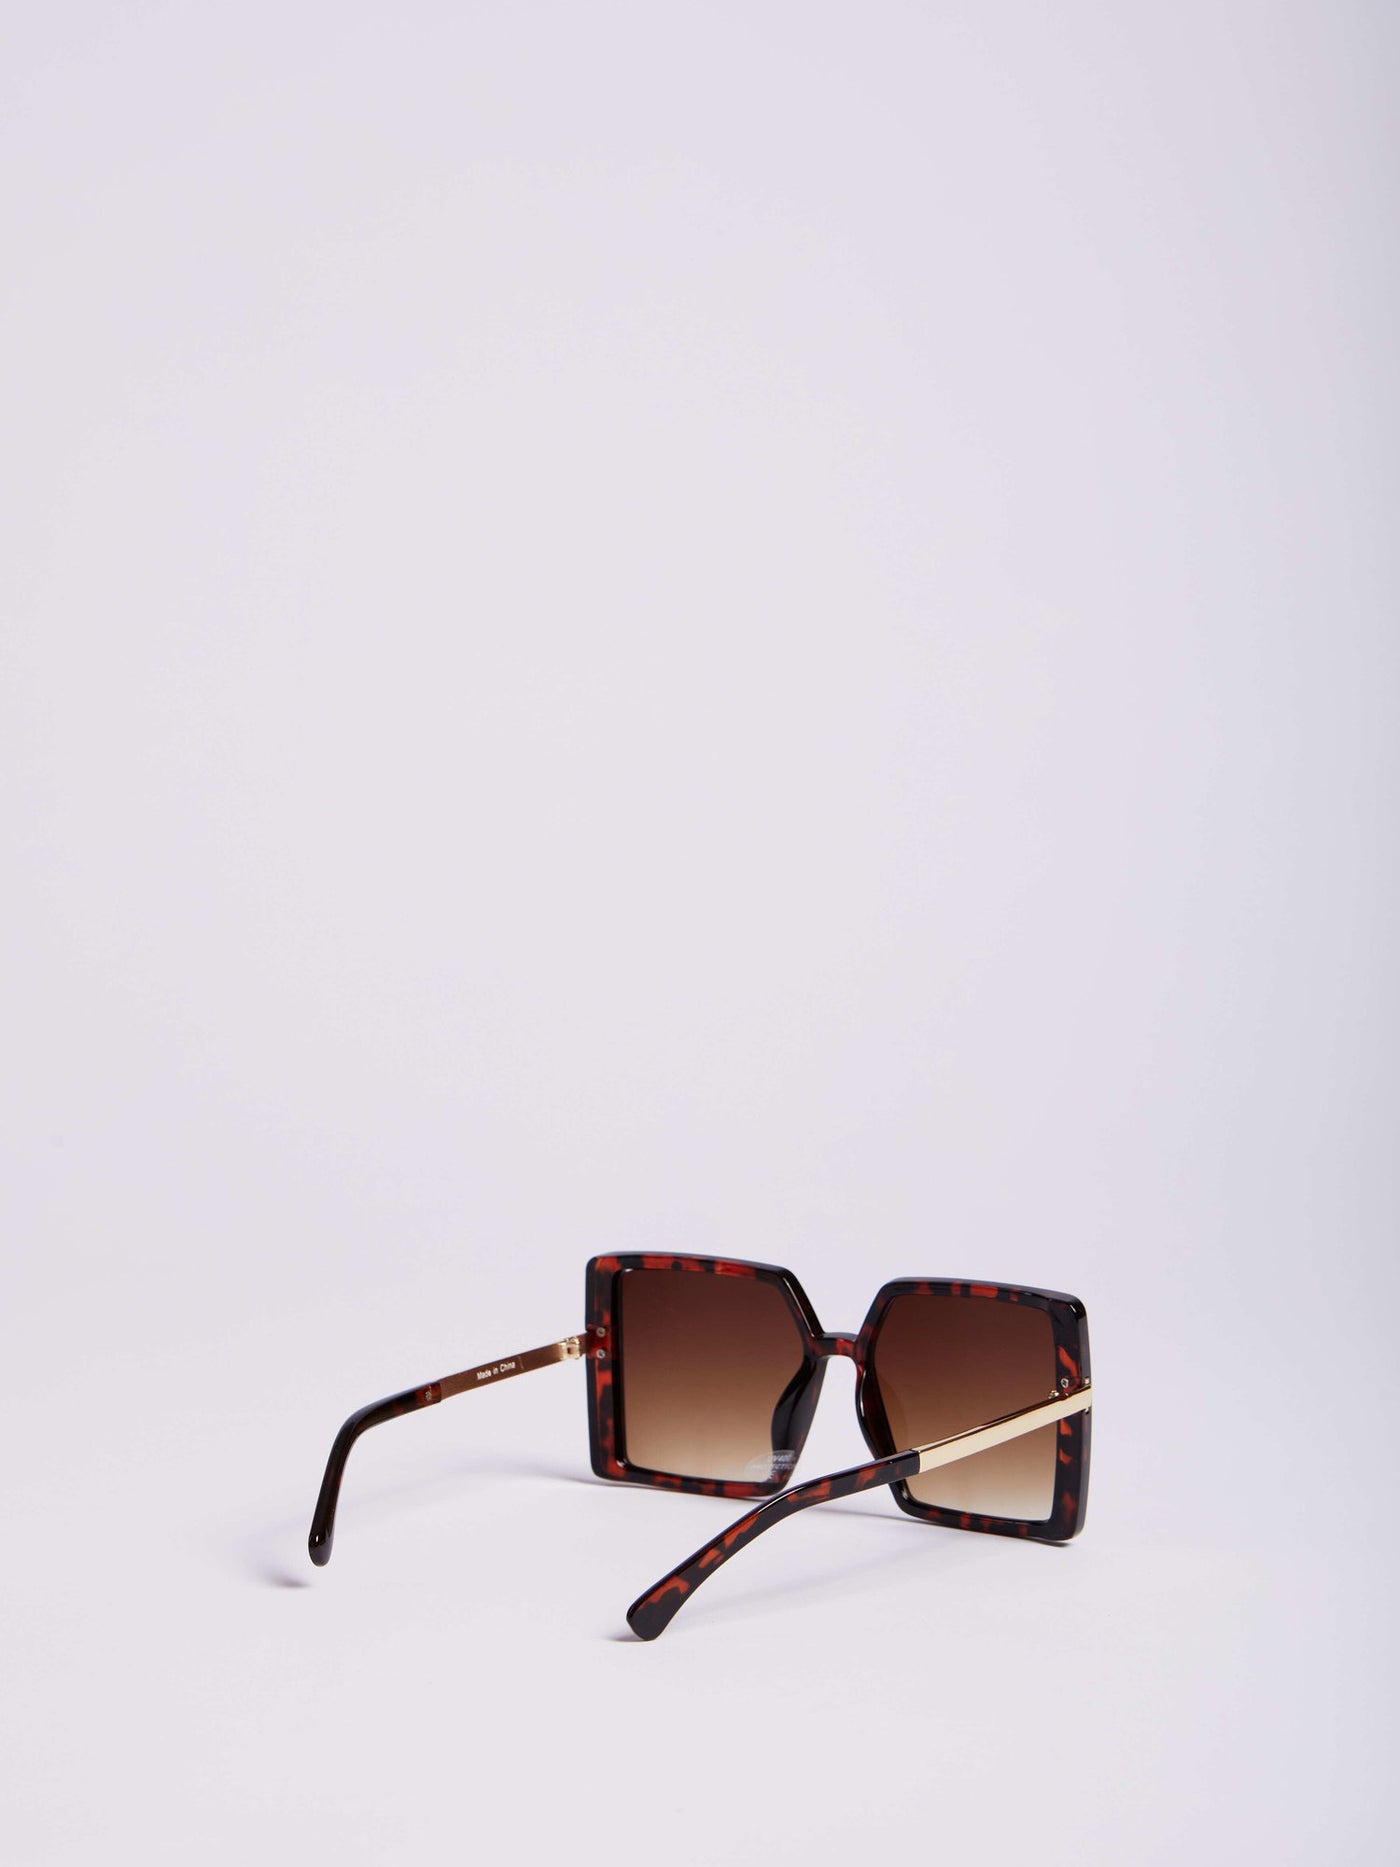 Sunglasses - Squared Lenses